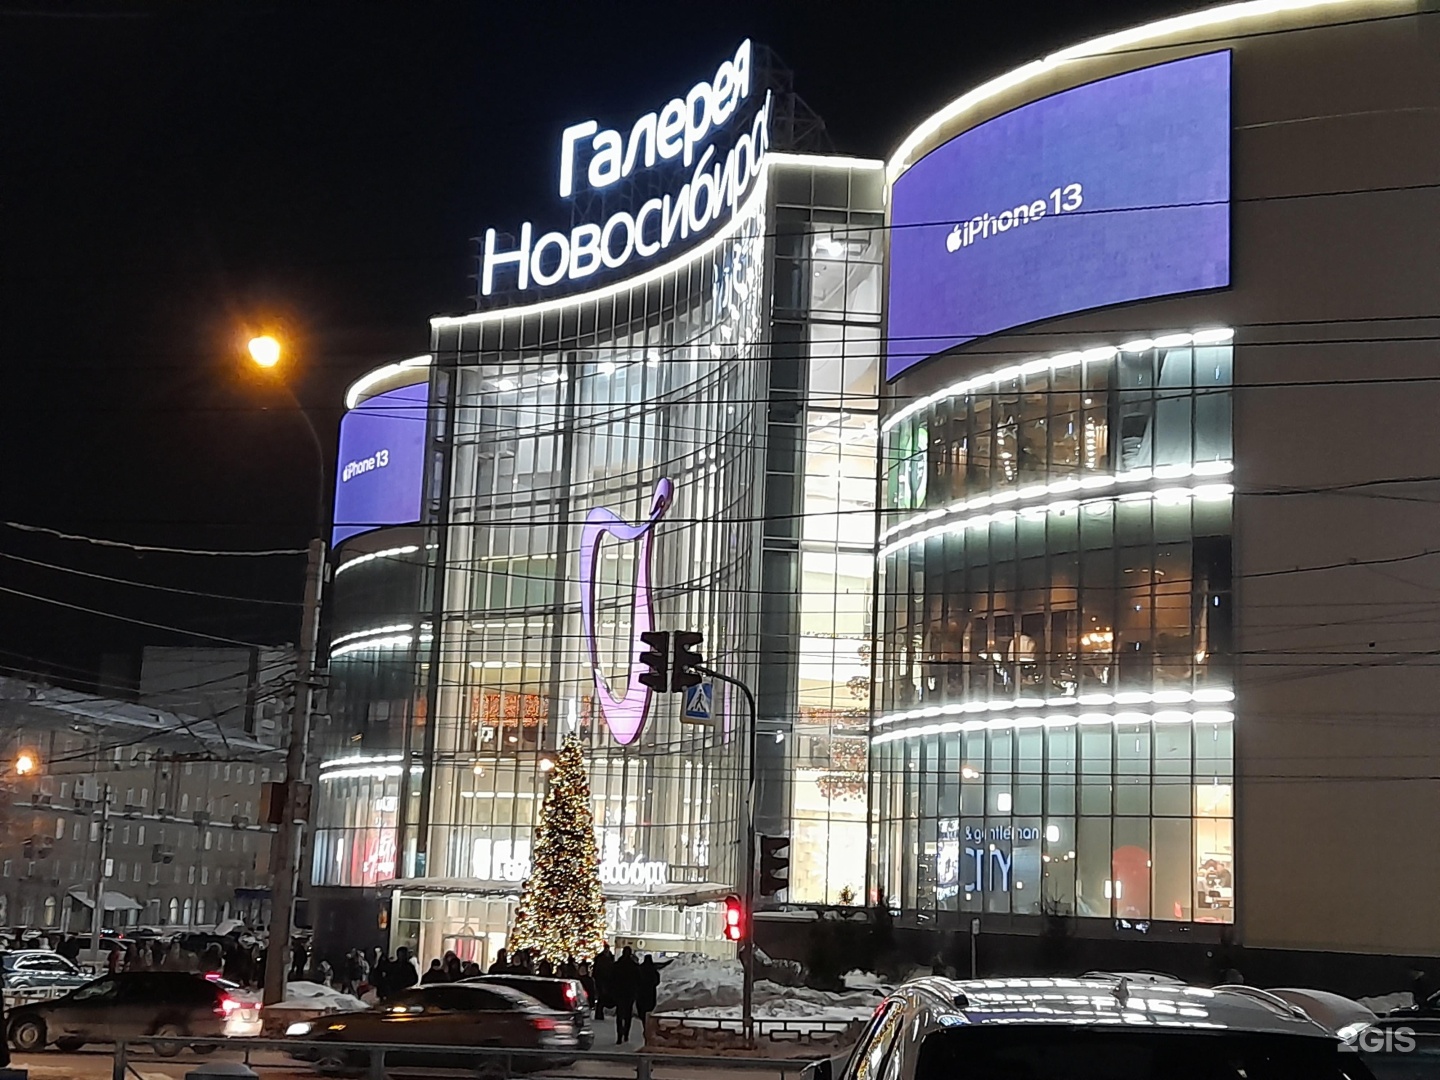 Галерея новосибирск. Гоголя 13 Новосибирск. Торговые центры Новосибирска. Самый большой ТЦ В Новосибирске.